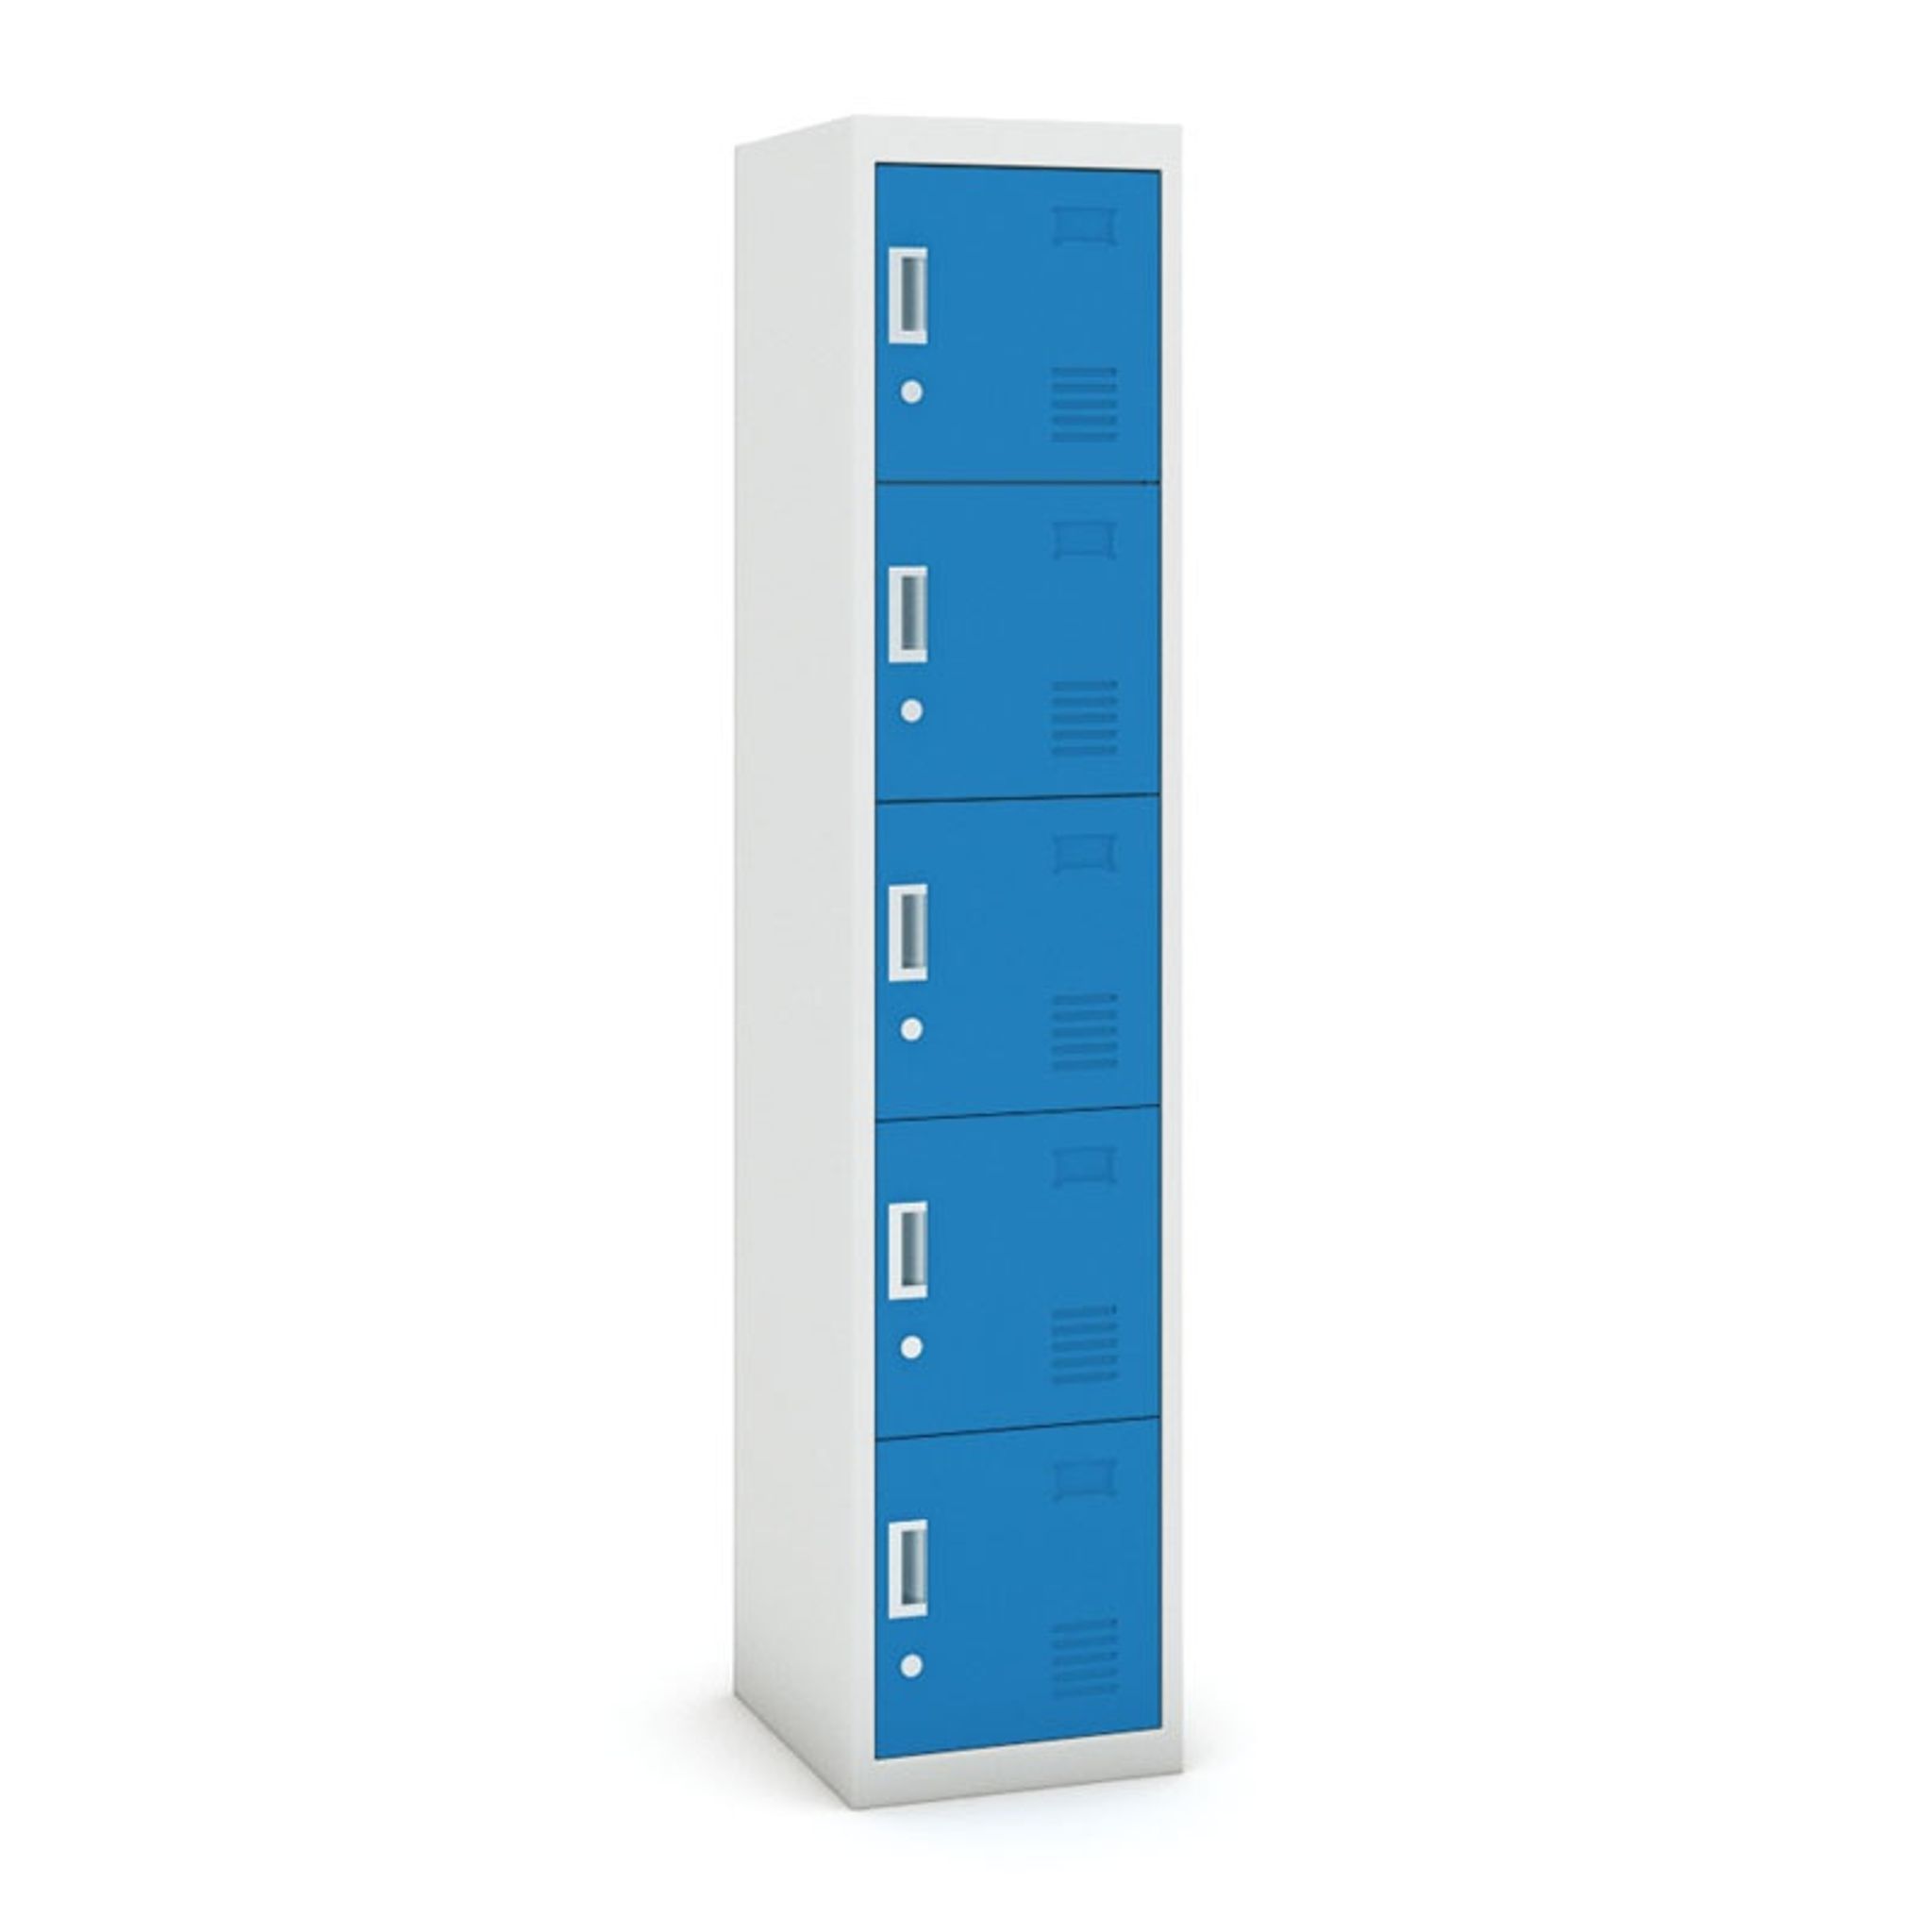 Šatní skříňka s úložnými boxy, pětidveřová, cylindrický zámek, 1800 x 380 x 450 mm, šedá/modrá